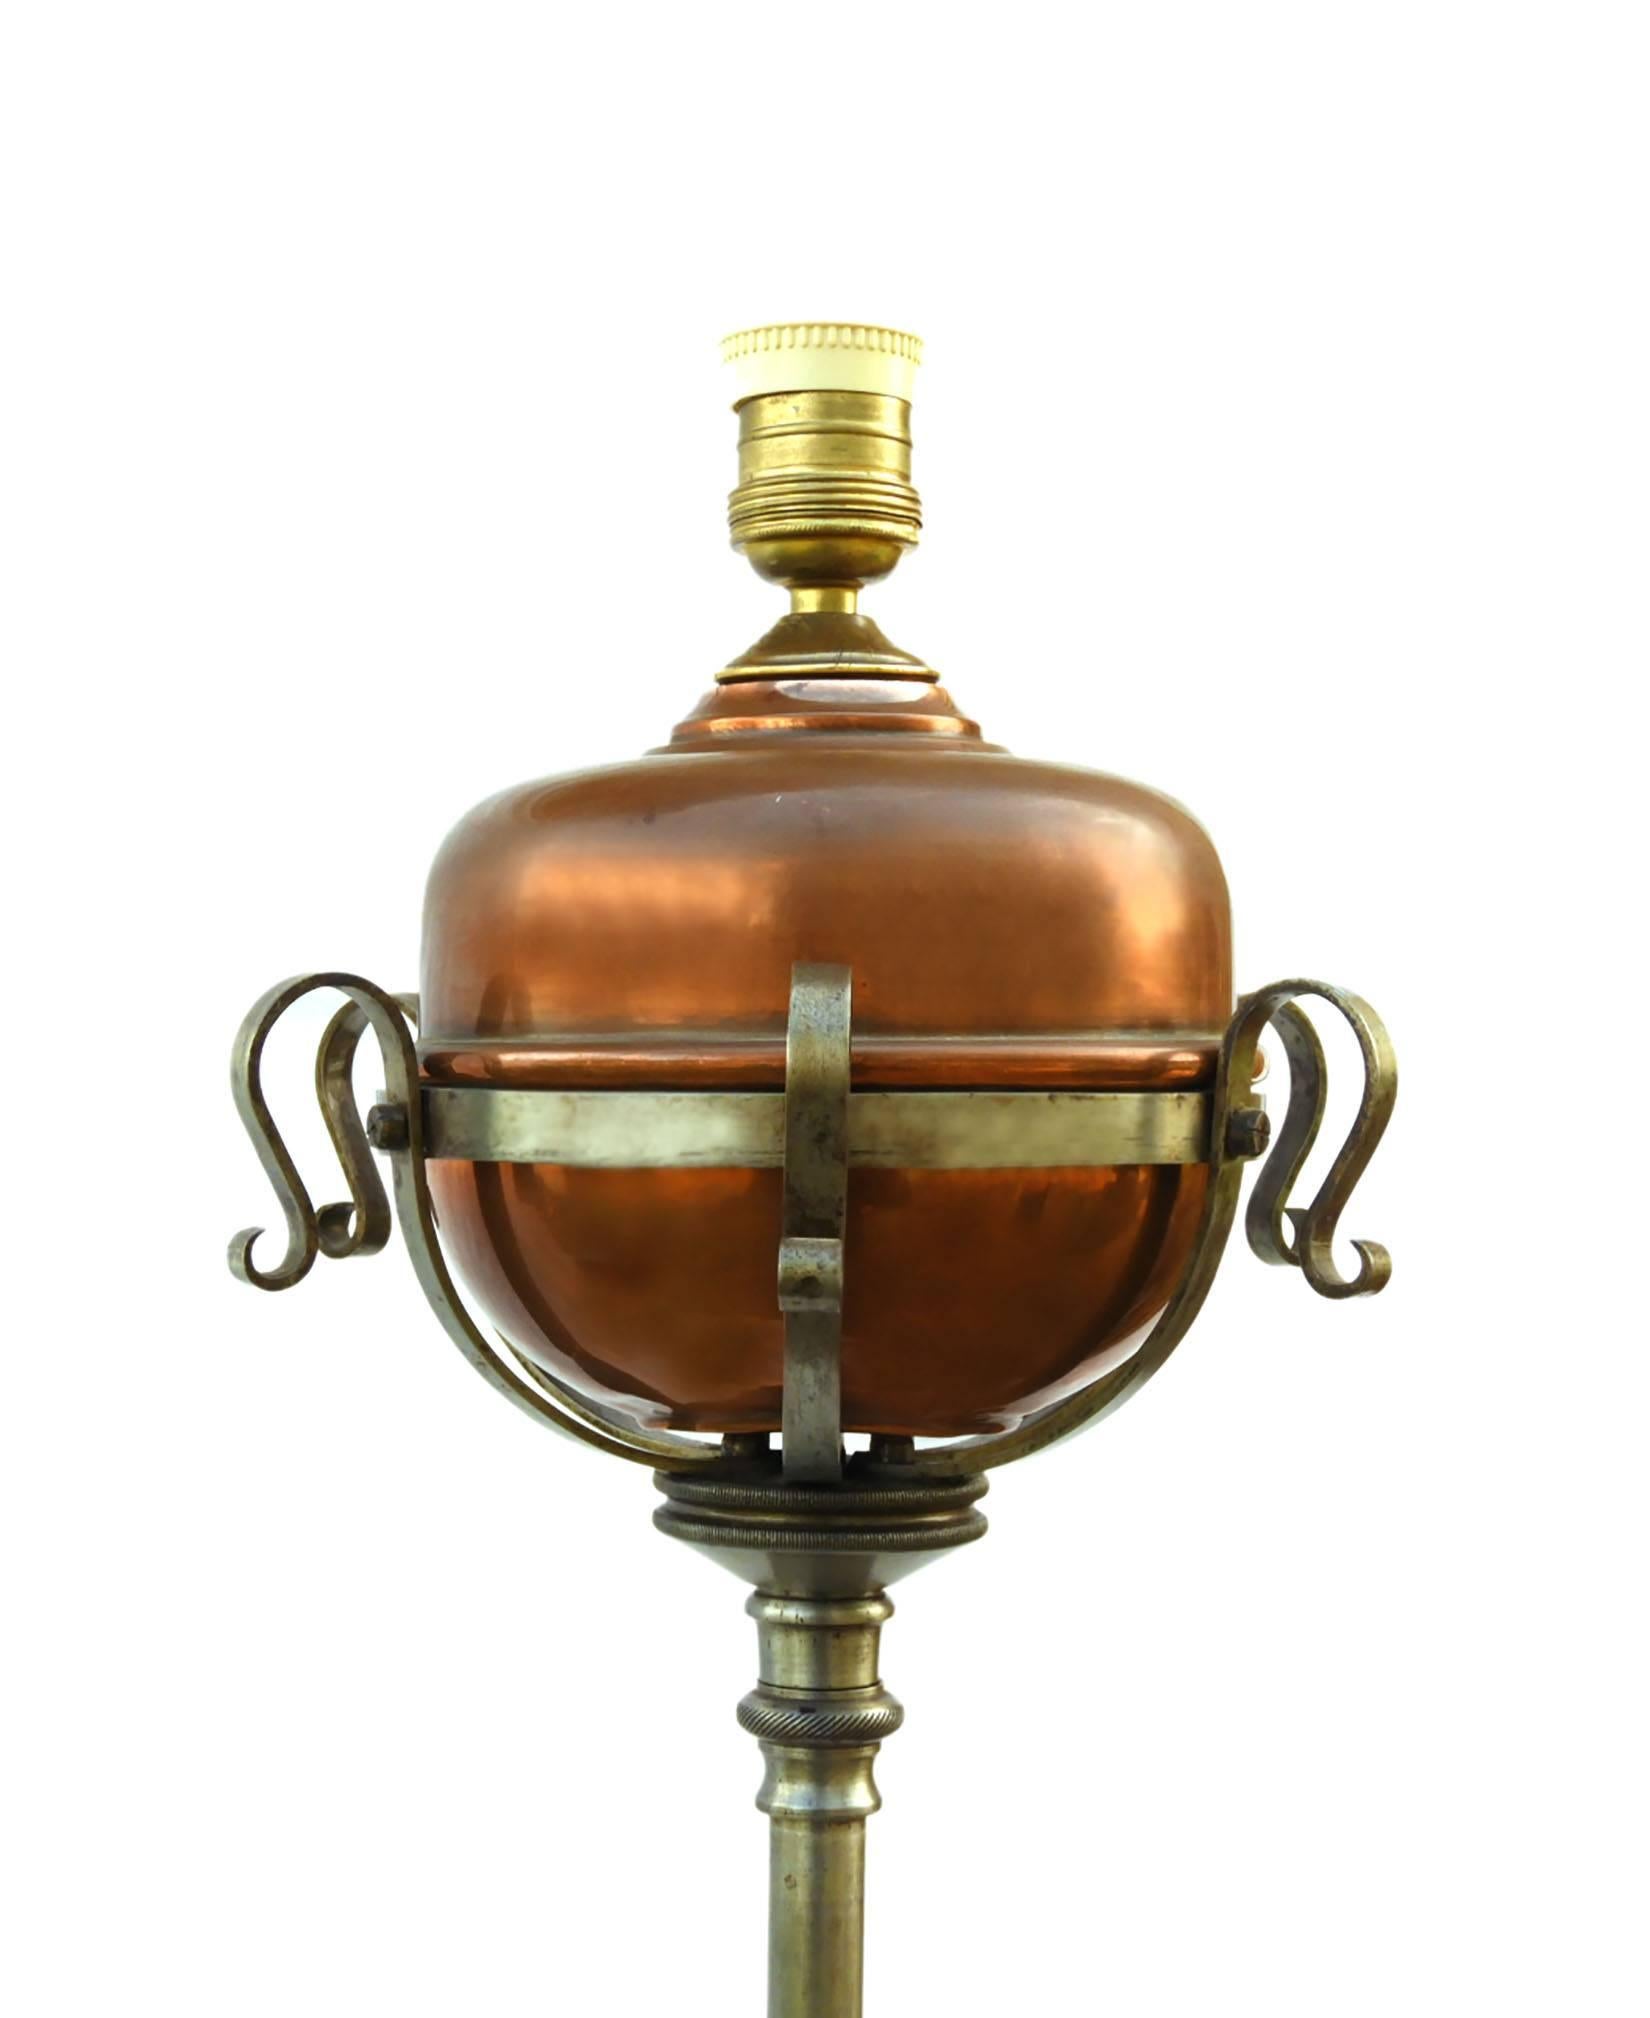 Antique lampadaire Arts and Crafts télescopique en acier forgé français
Lampe standard télescopique réglable
Lampe à huile originale avec réservoir en cuivre, convertie ultérieurement à l'électricité
Il peut recevoir l'abat-jour de votre choix ou